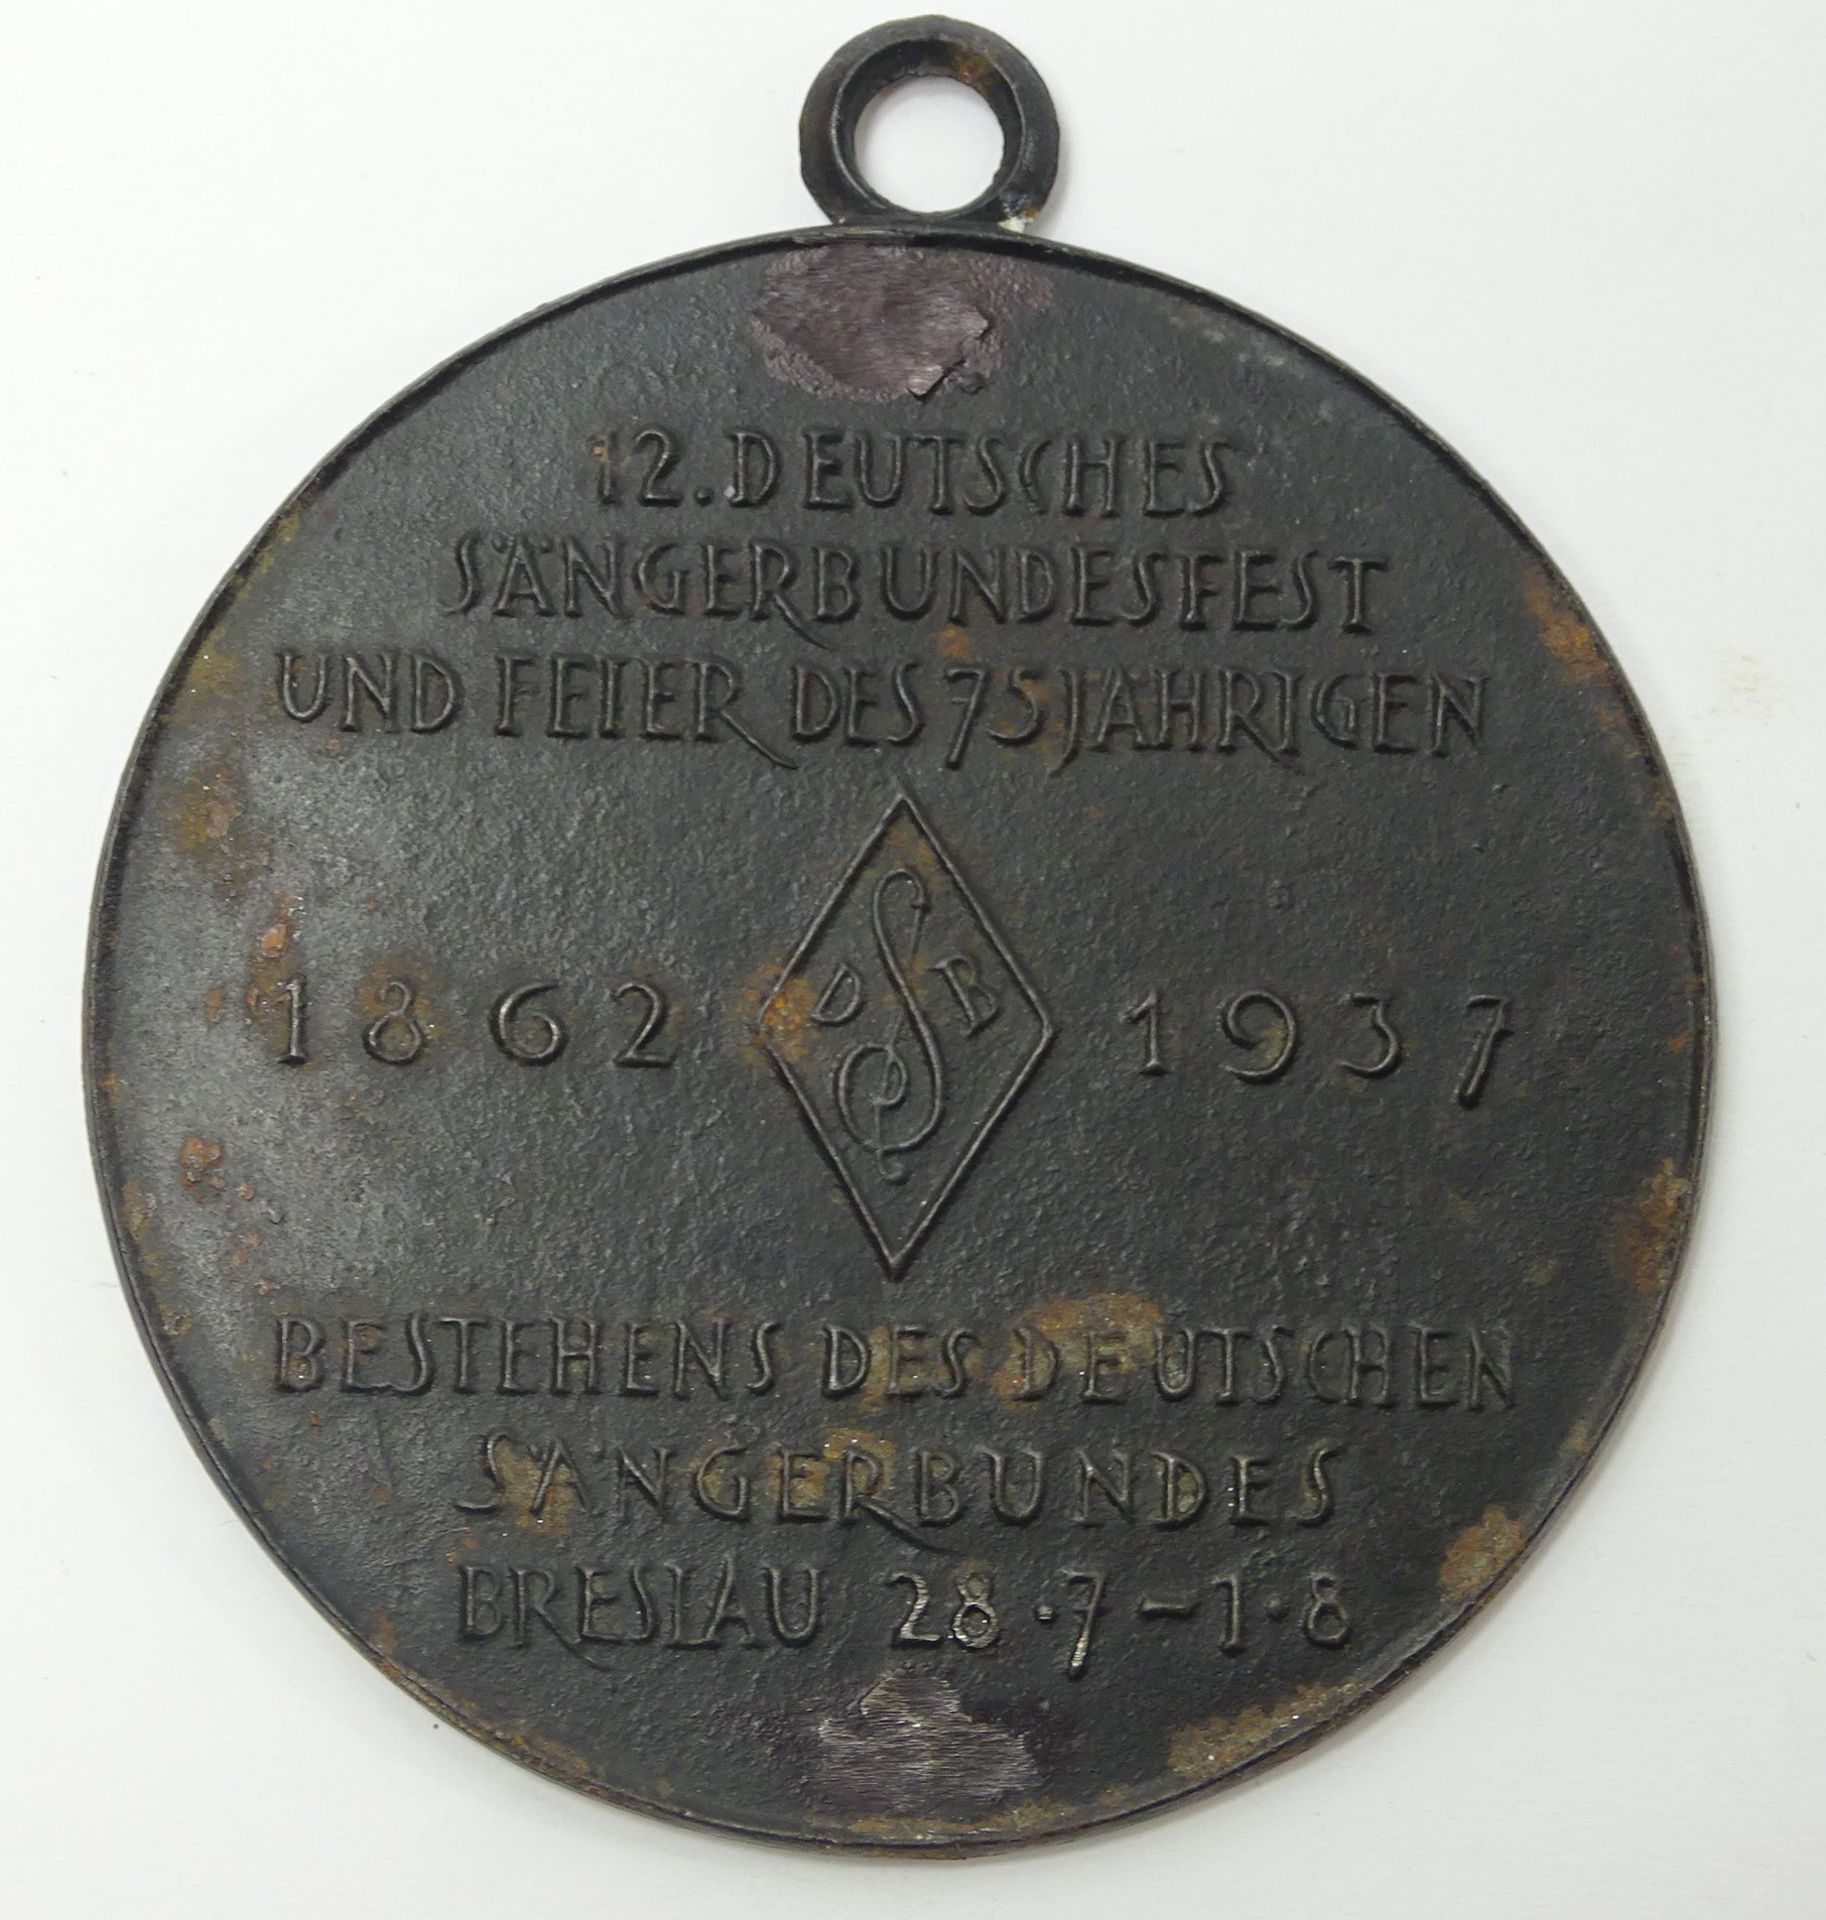 Medaille 12. Deutsches Sängerbundesfest, 75 Jahre Sängerbund, Breslau 1937, Eisenguss geschwärzt, Ø